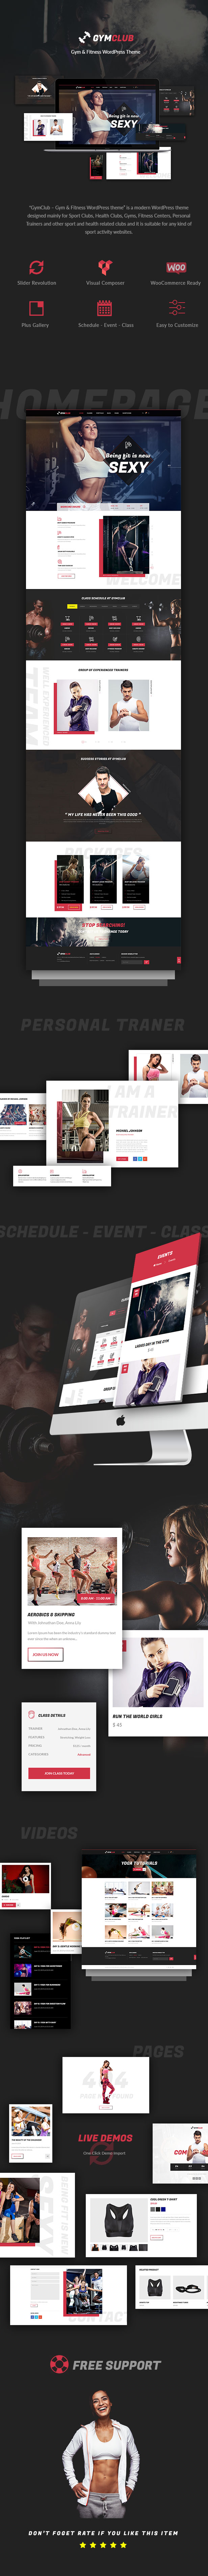 GymClub - Gym & Fitness WordPress Theme - 1